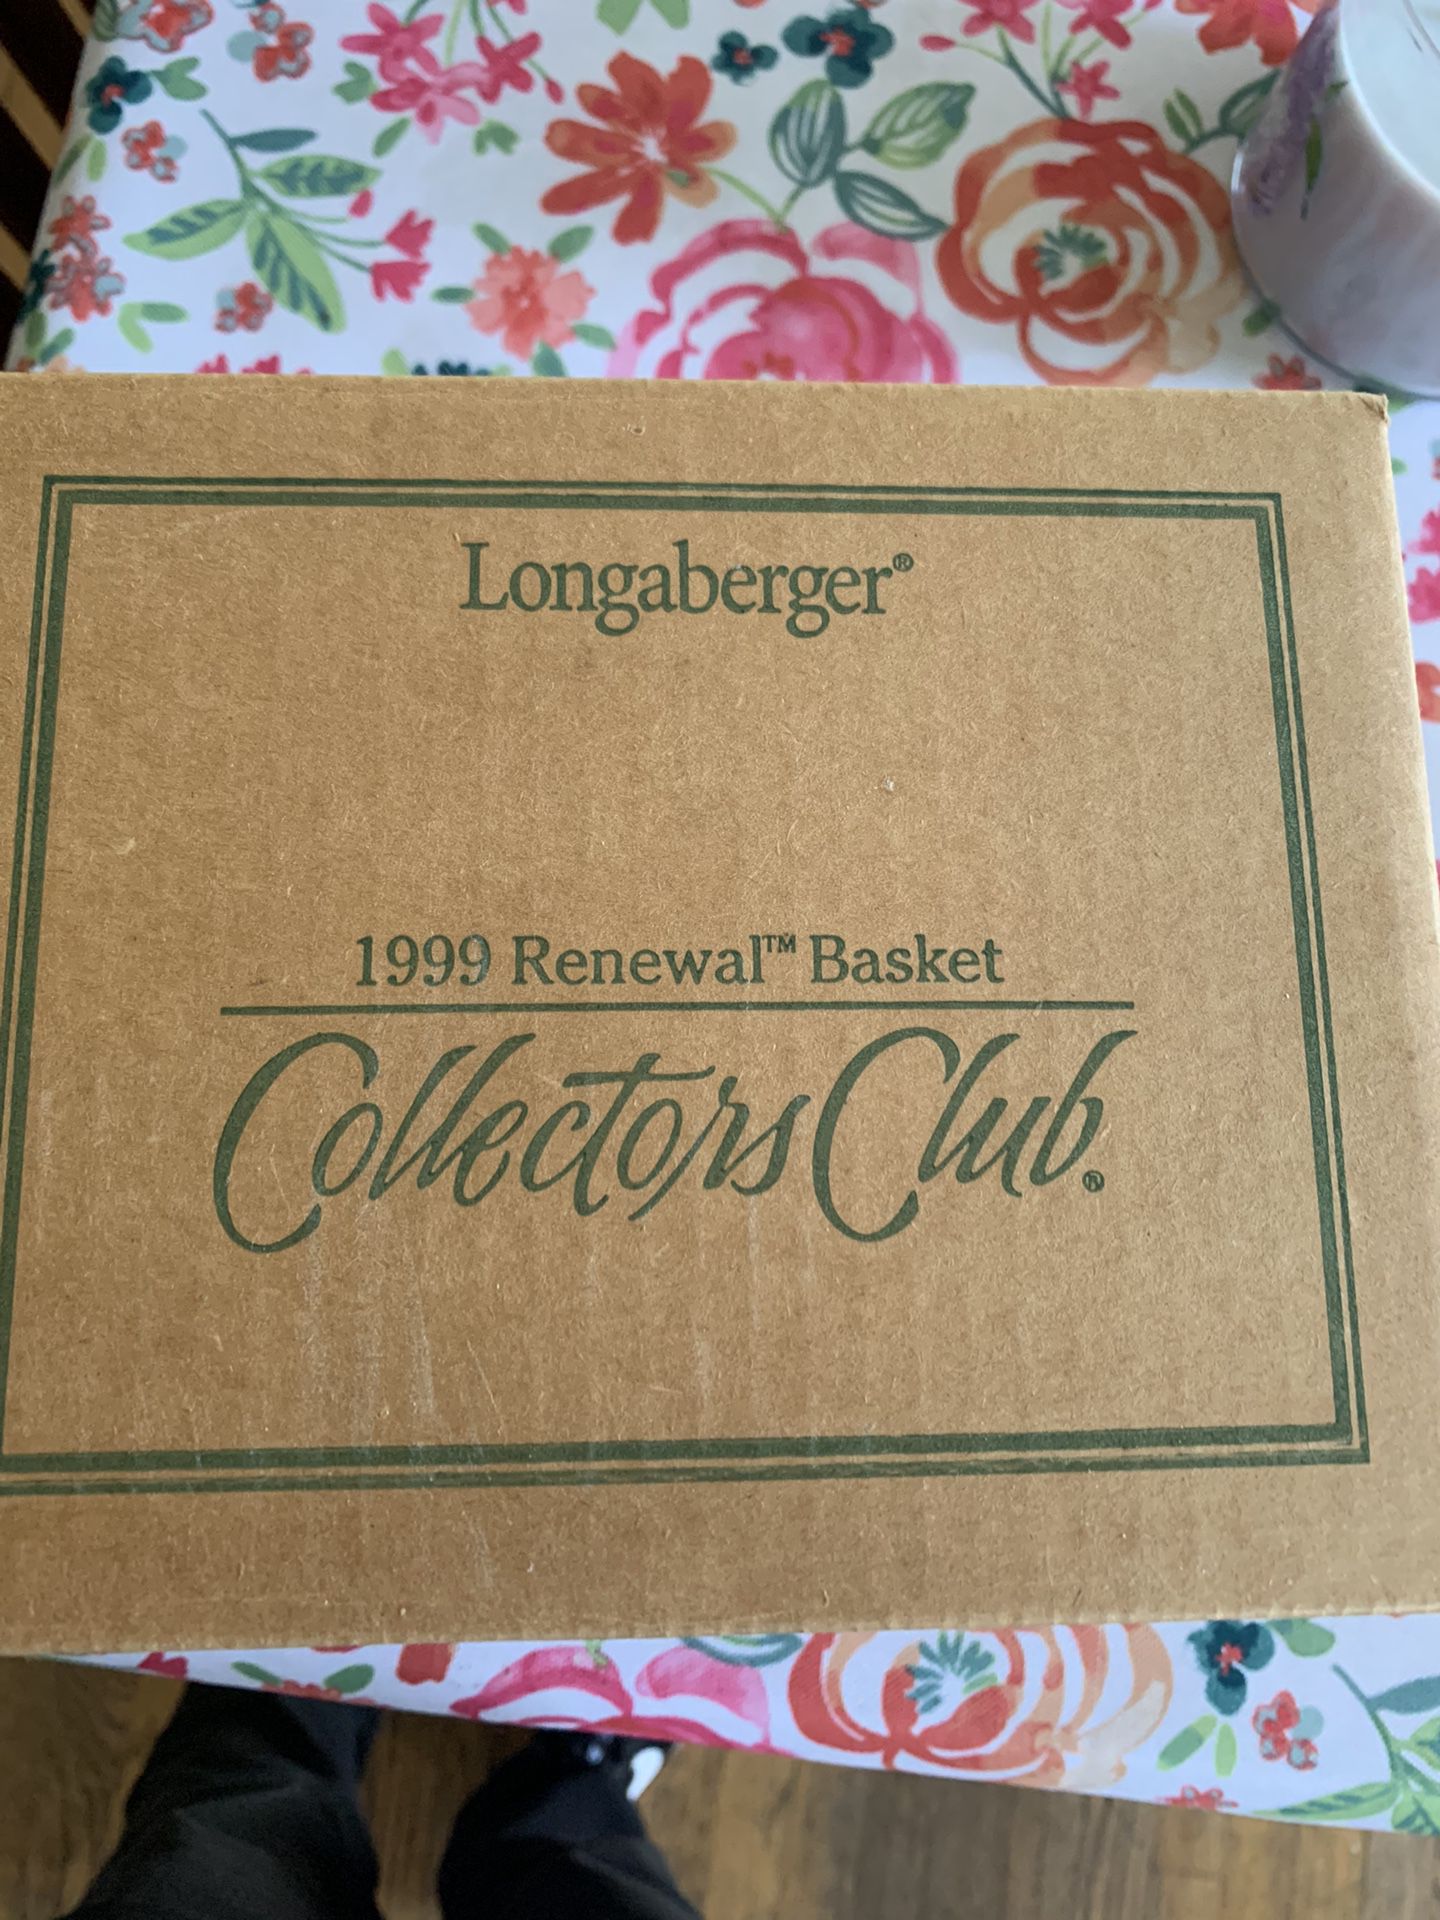 Longaberger Collectors club 